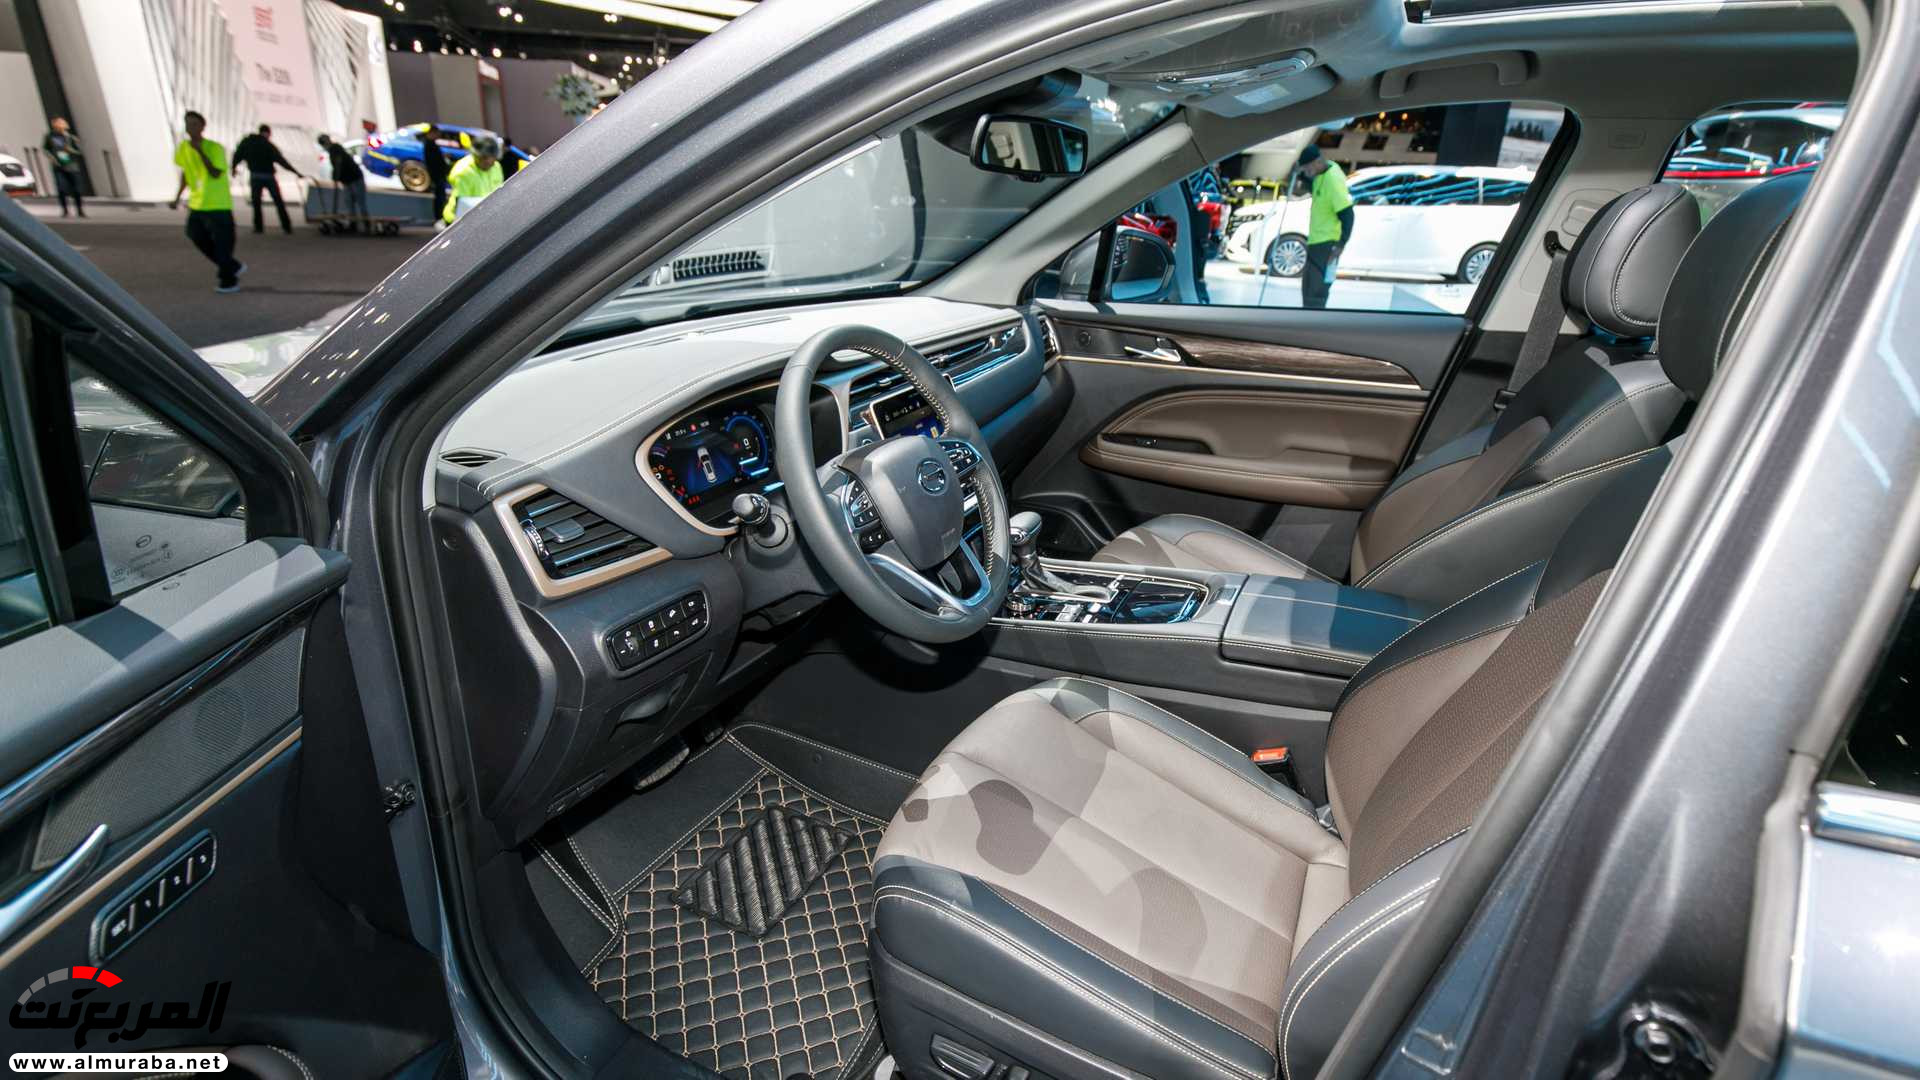 "80 صورة" نظرة على سيارات جي ايه سي في معرض ديترويت للسيارات 2019 238